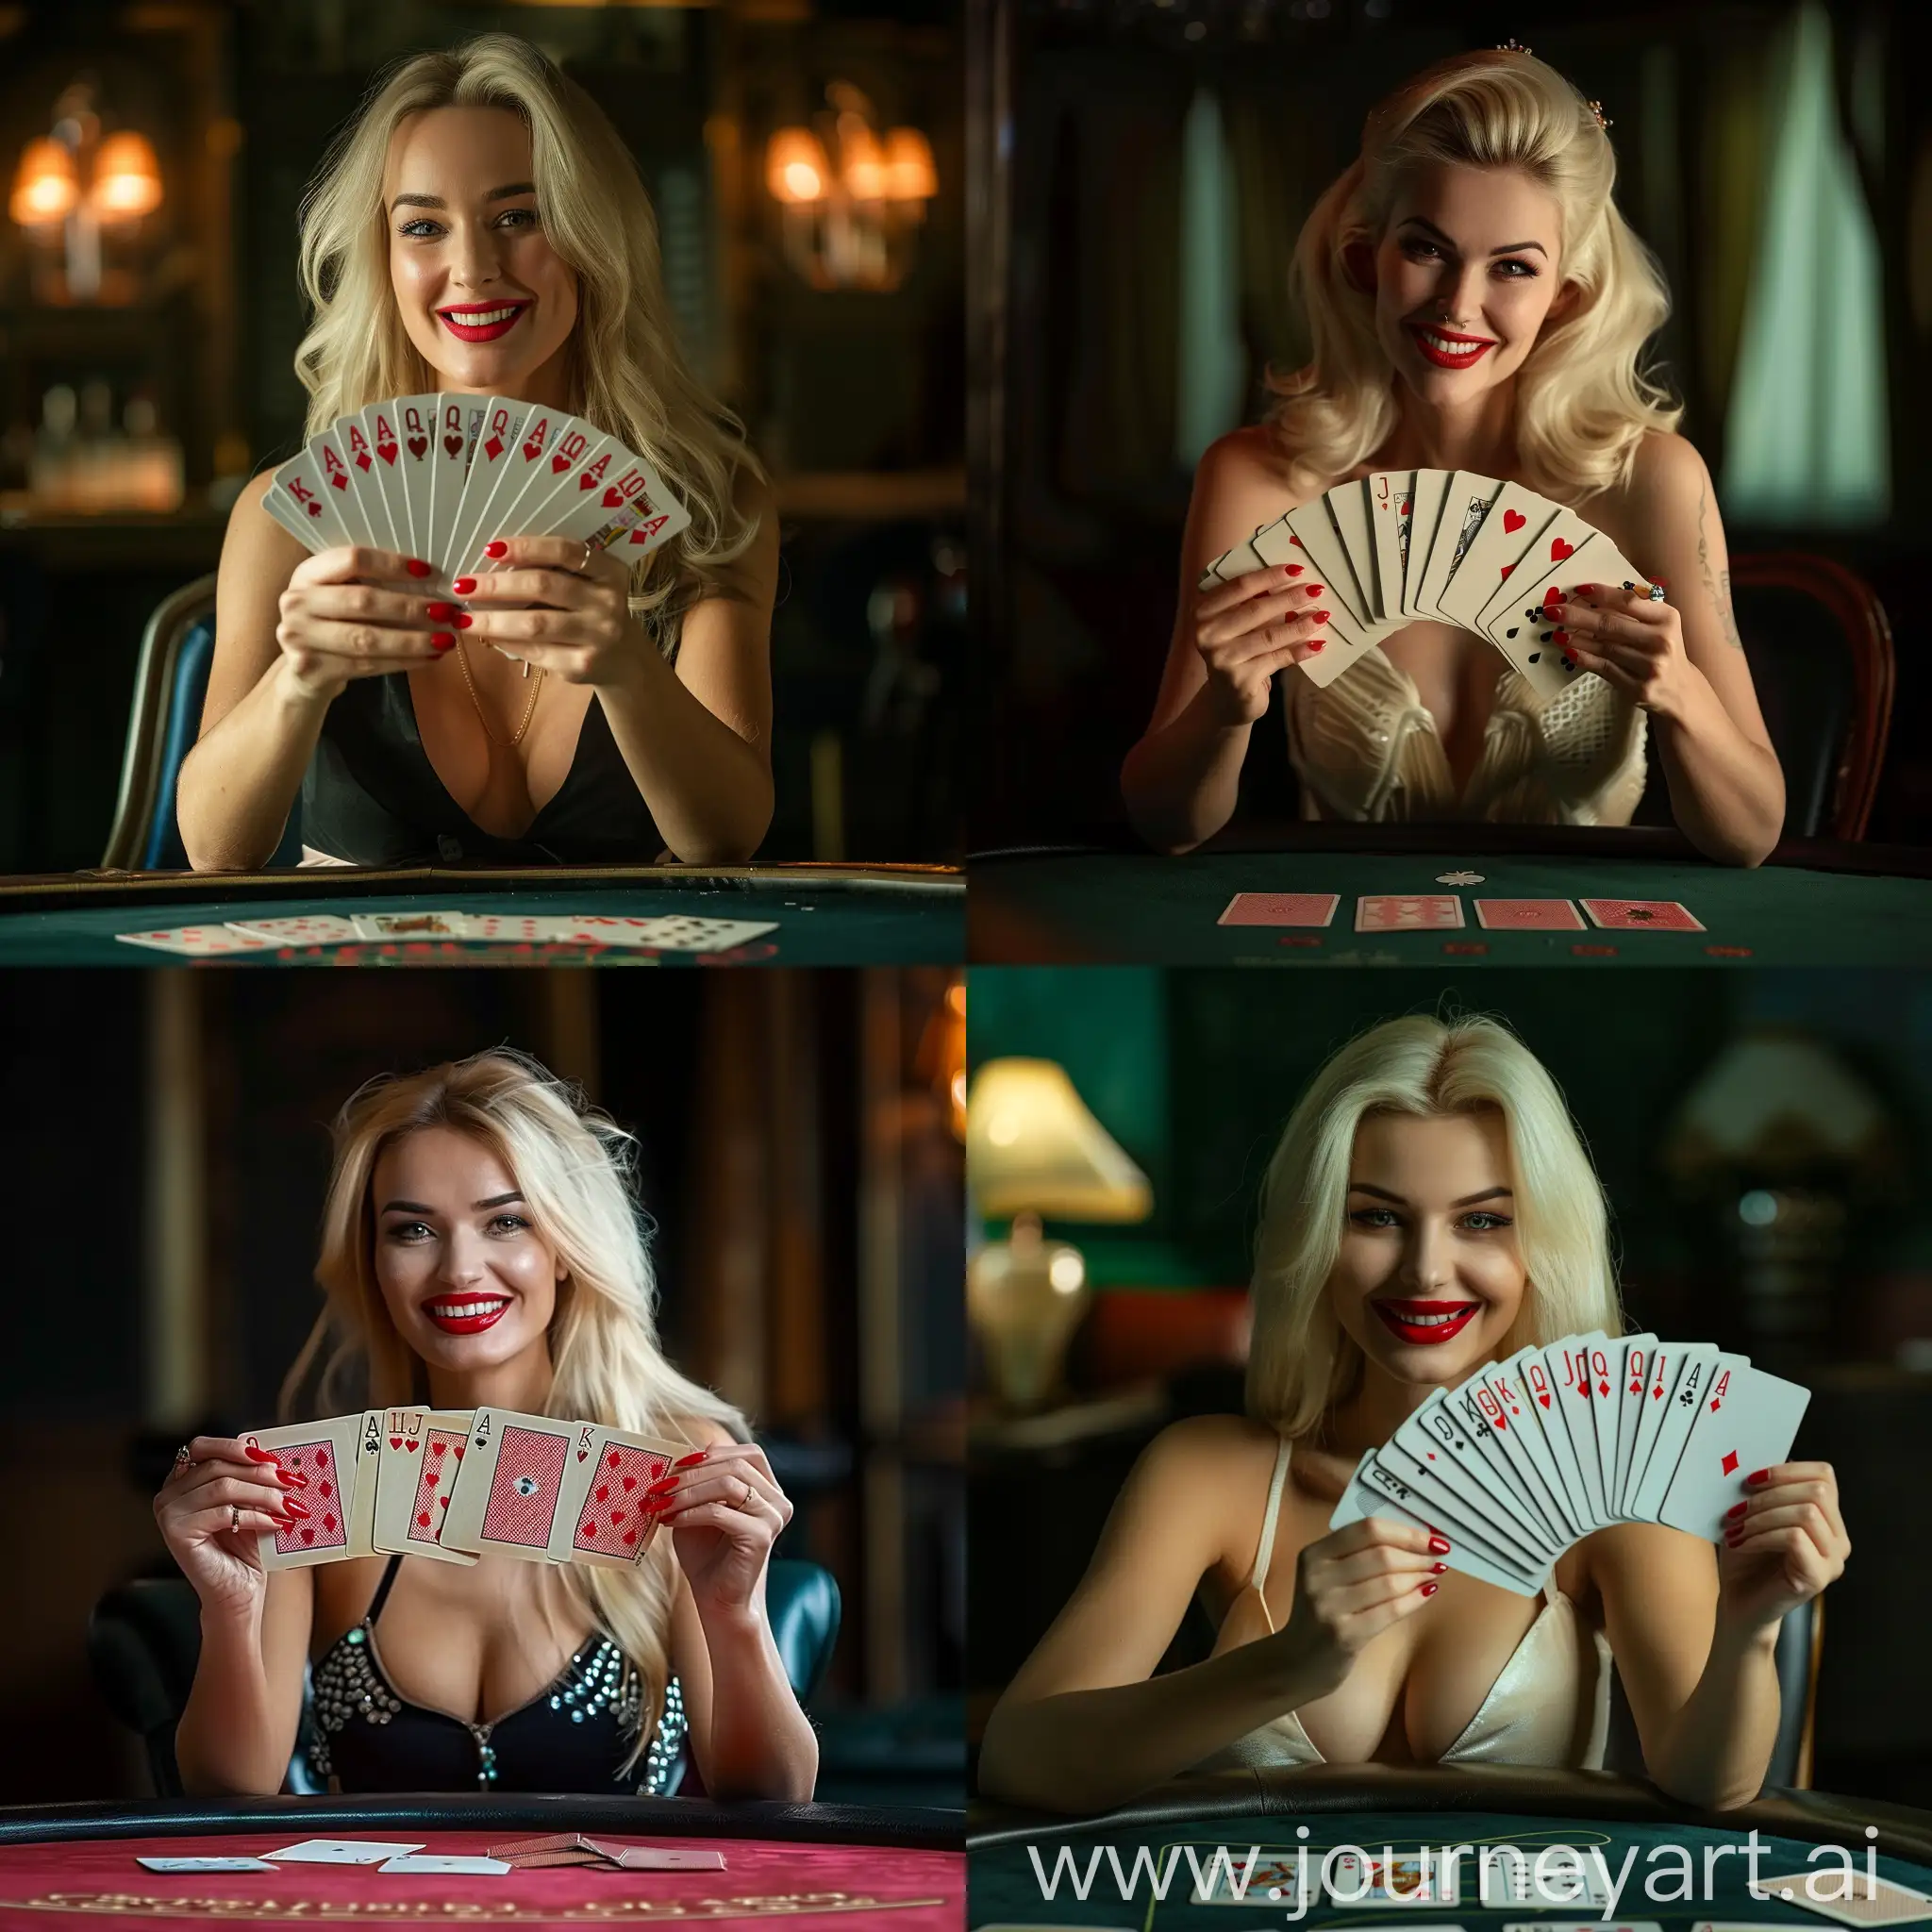 Блондинка сидит за игральным столом, в руках держит карты как веер , у нее красные ногти и красные губы она улыбается, темный фон
